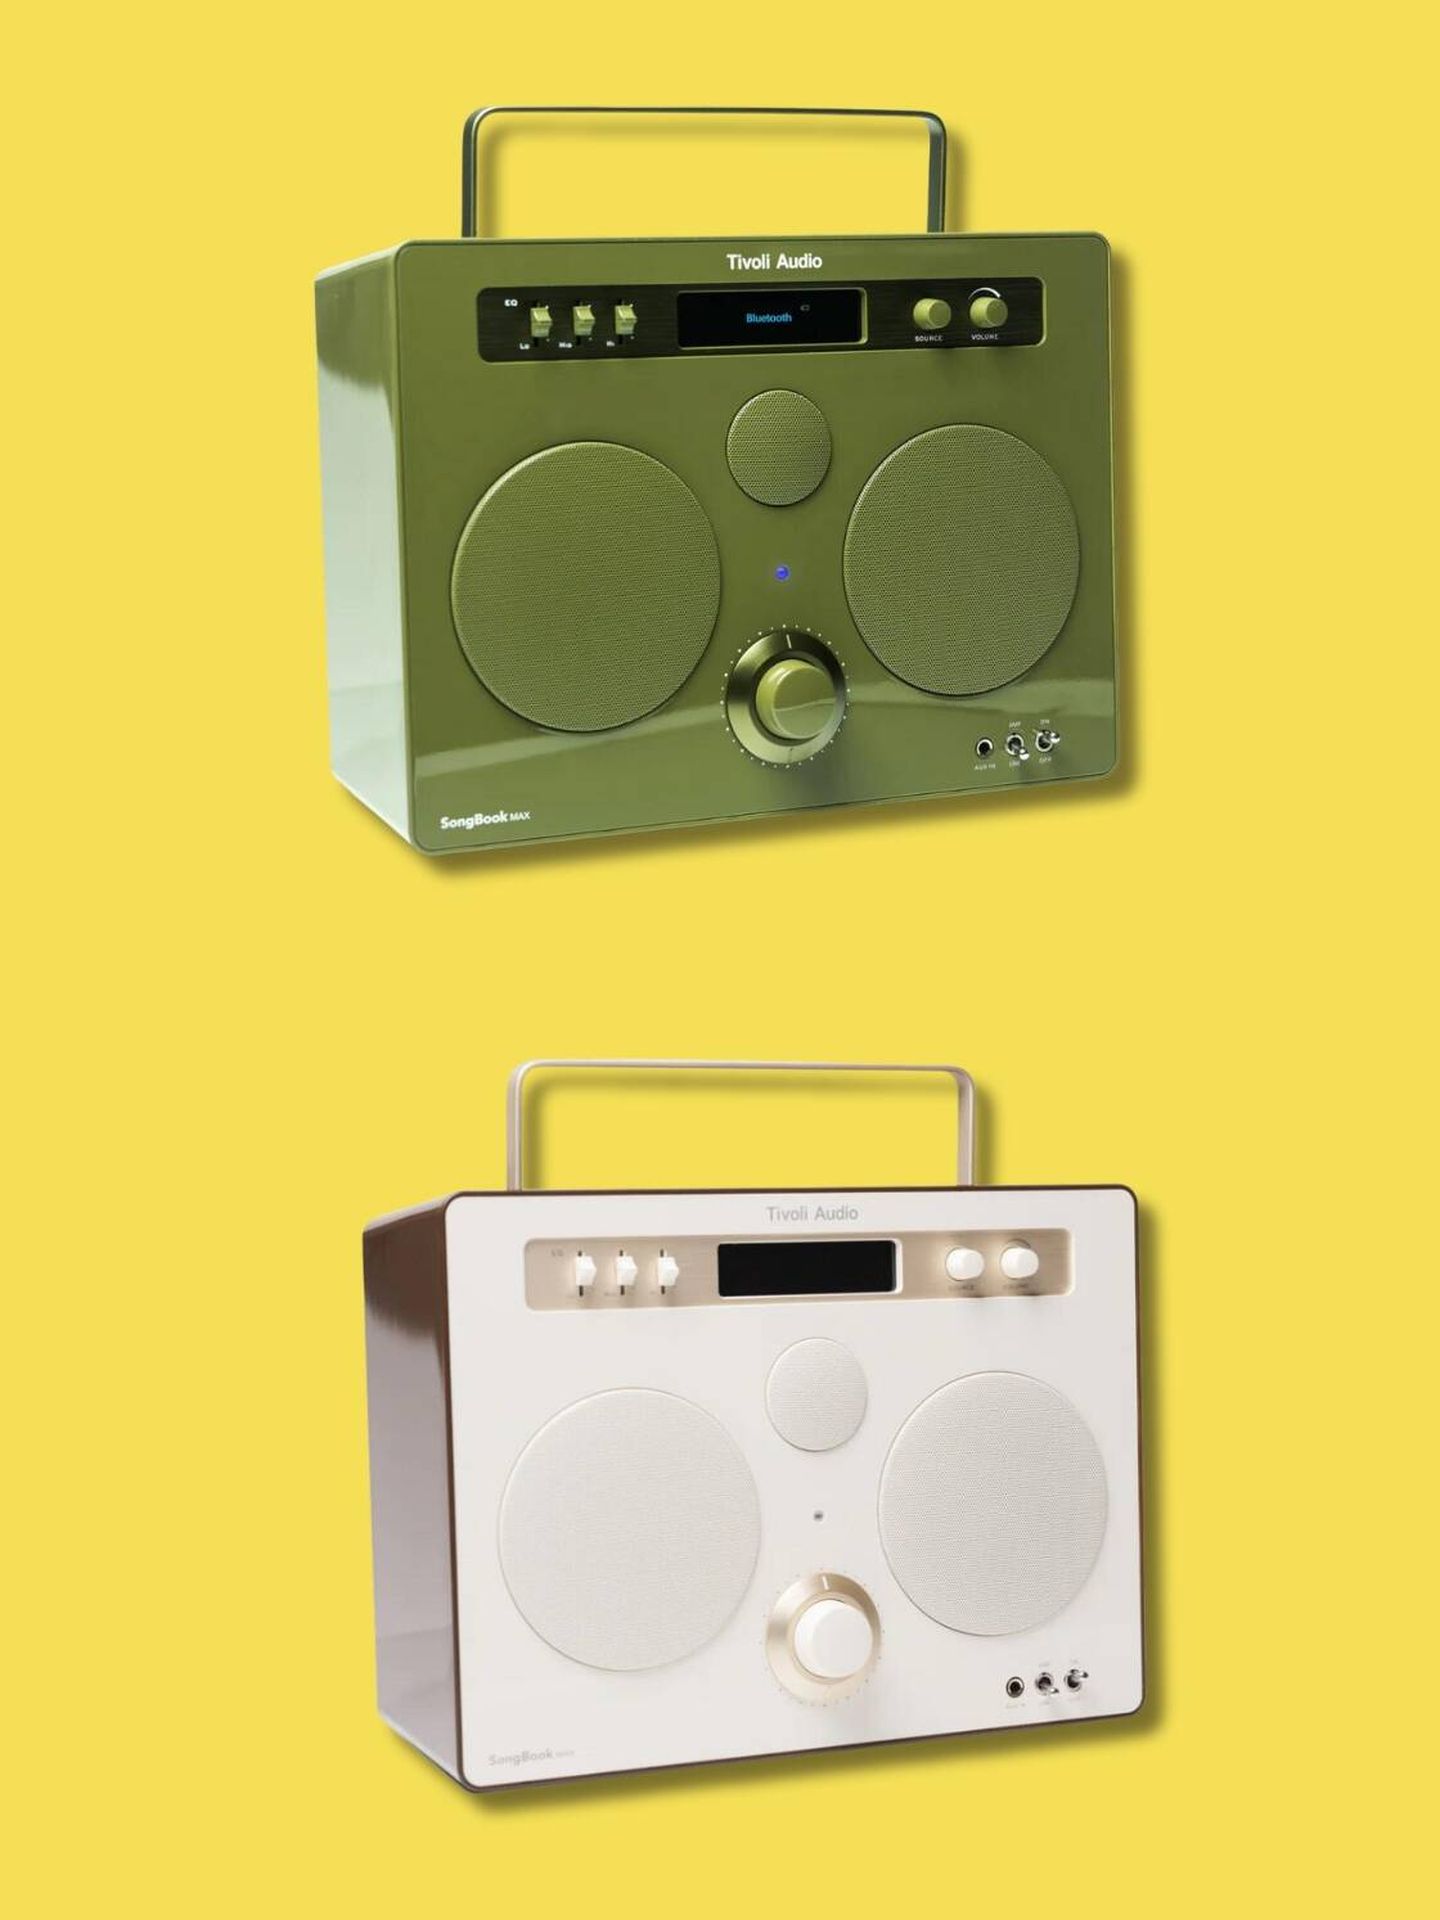 El sistema de sonido SongBook Max está disponible en verde o crema. (Cortesía)